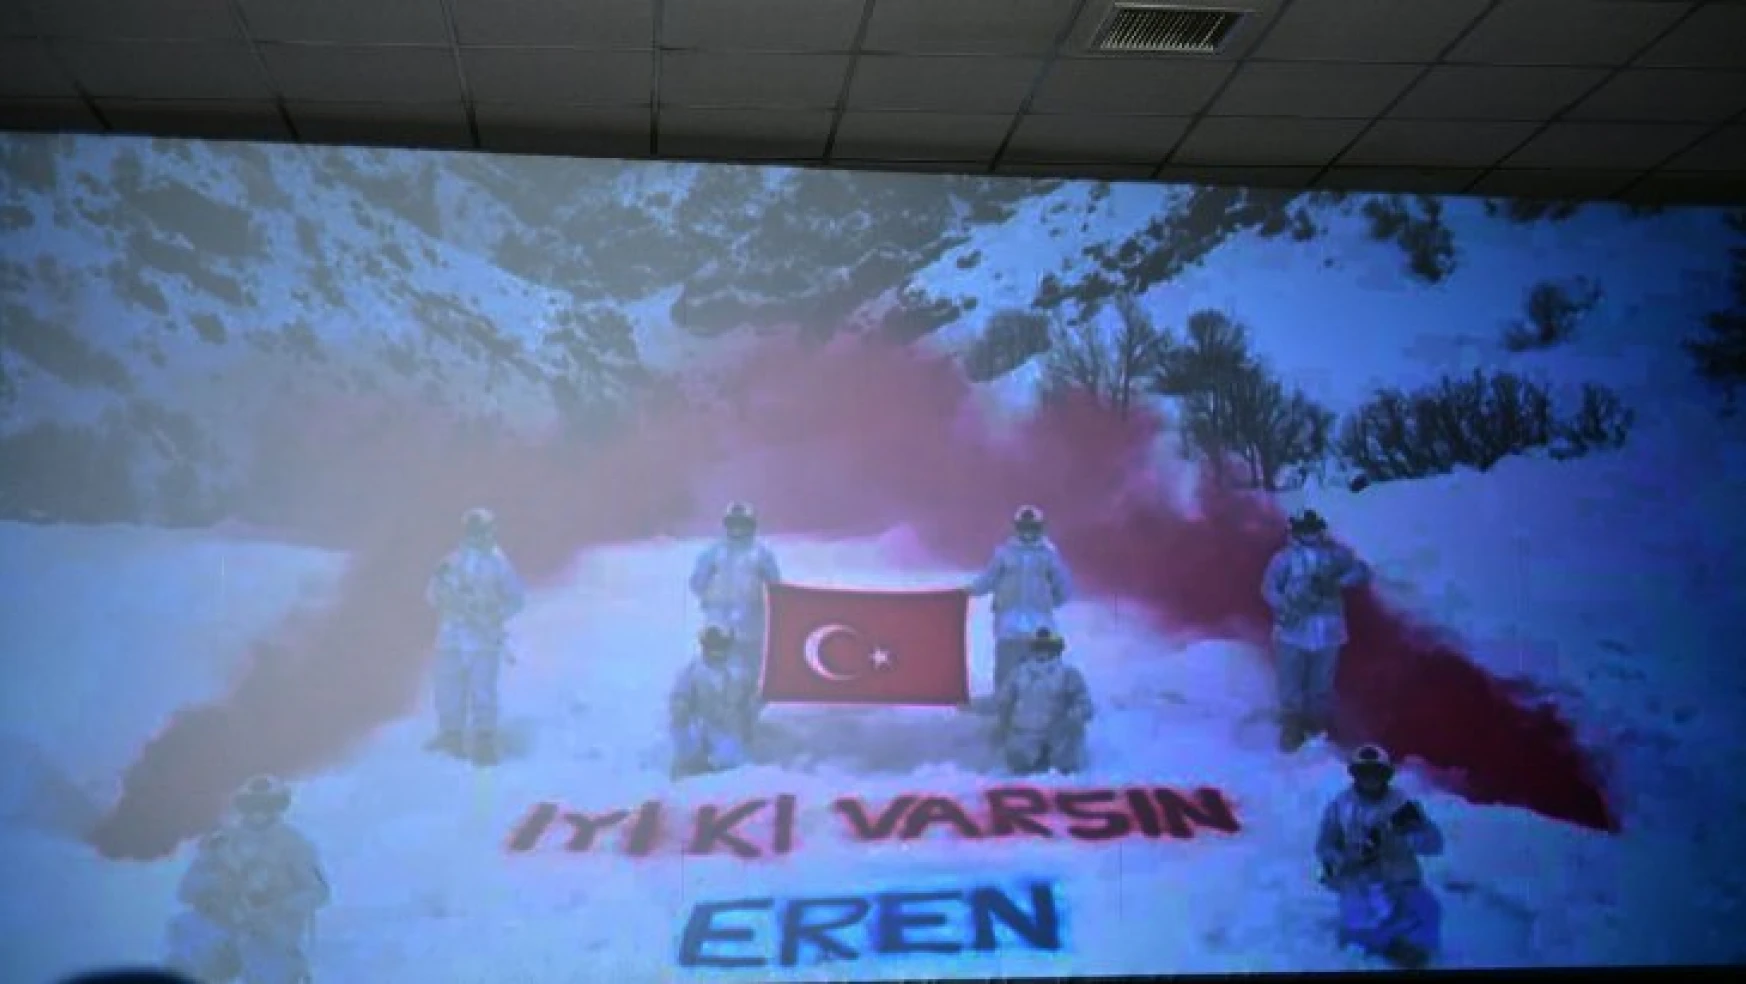 Başkan Çınar, 'Kesişme: İyi Ki Varsın Eren' Sinema Filmini Şehit Yakınları Ve Gazilerle Birlikte İzledi